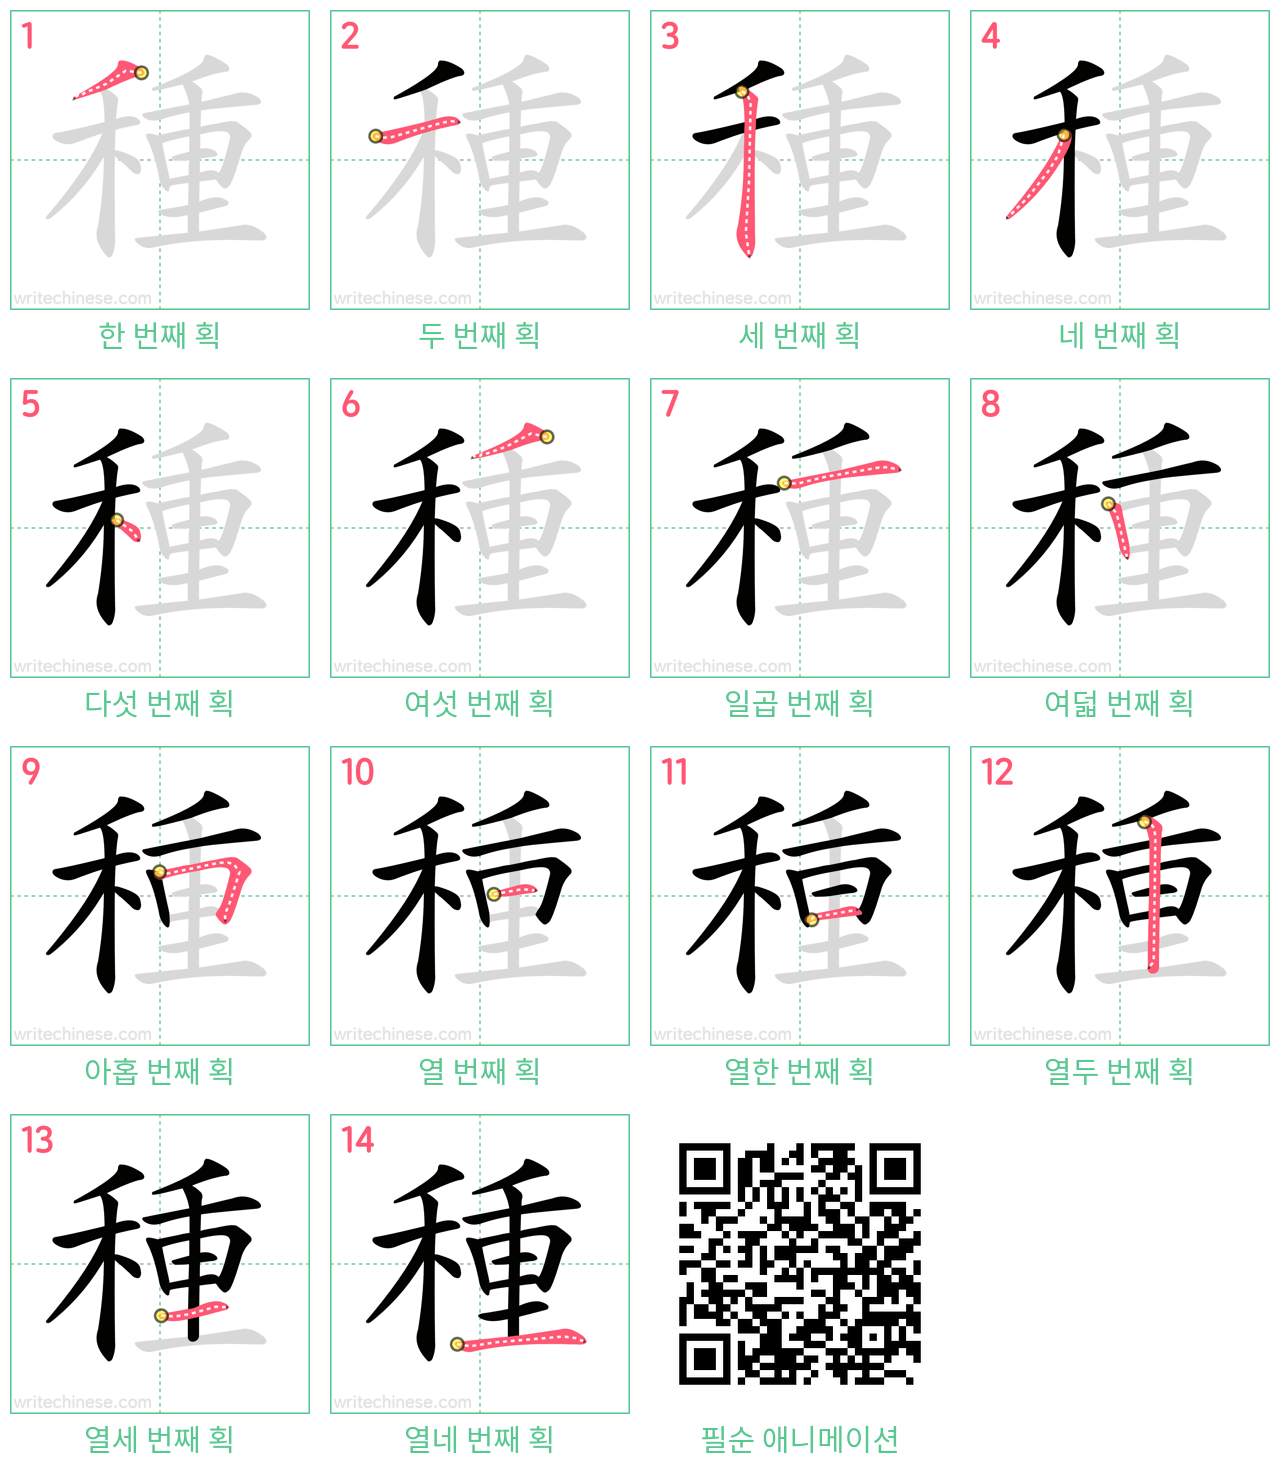 種 step-by-step stroke order diagrams